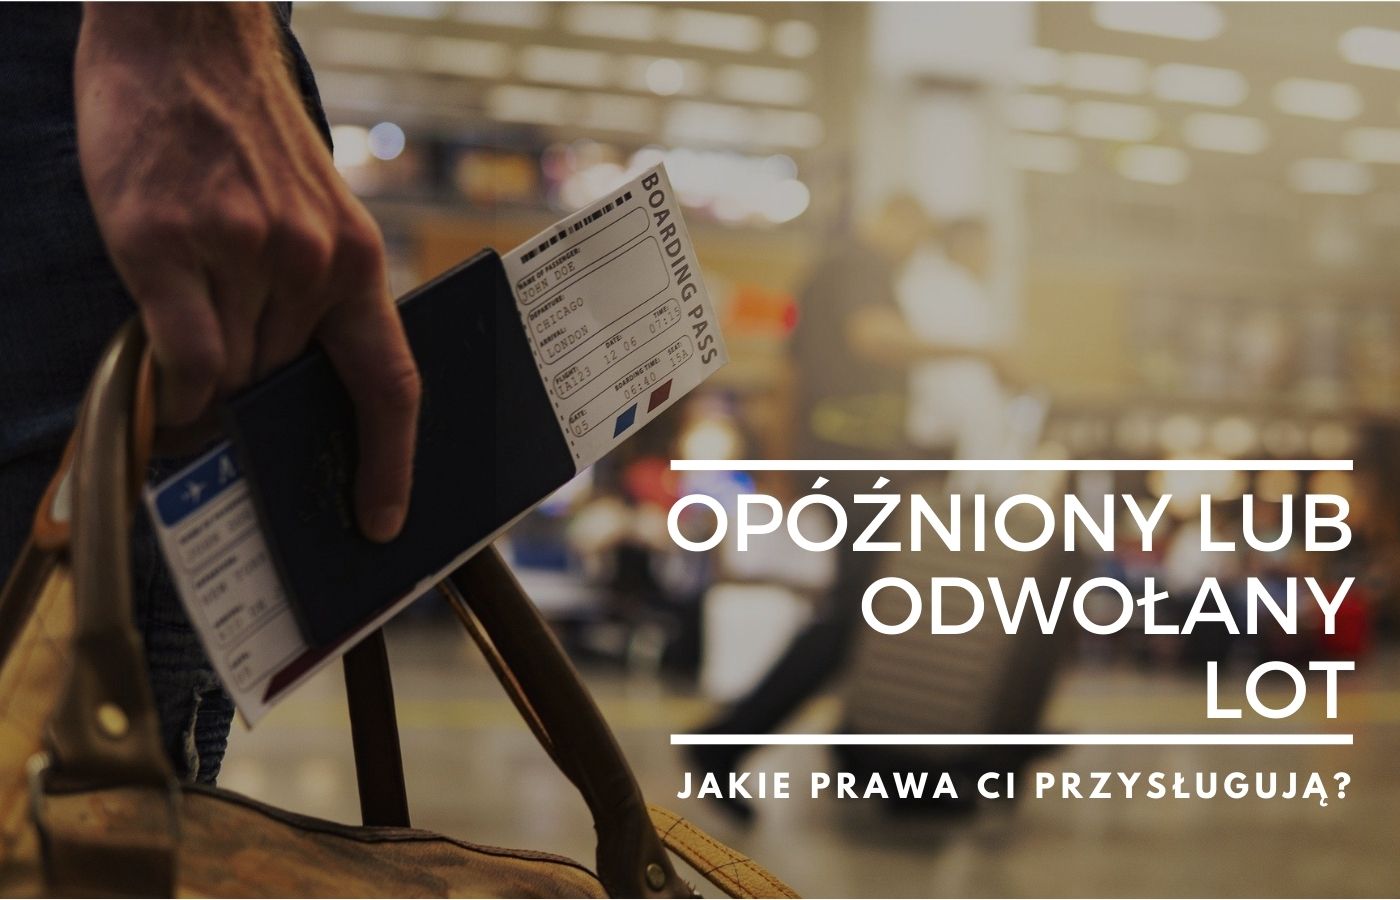 You are currently viewing Odwołany lub opóźniony lot? Zobacz swoje prawa!